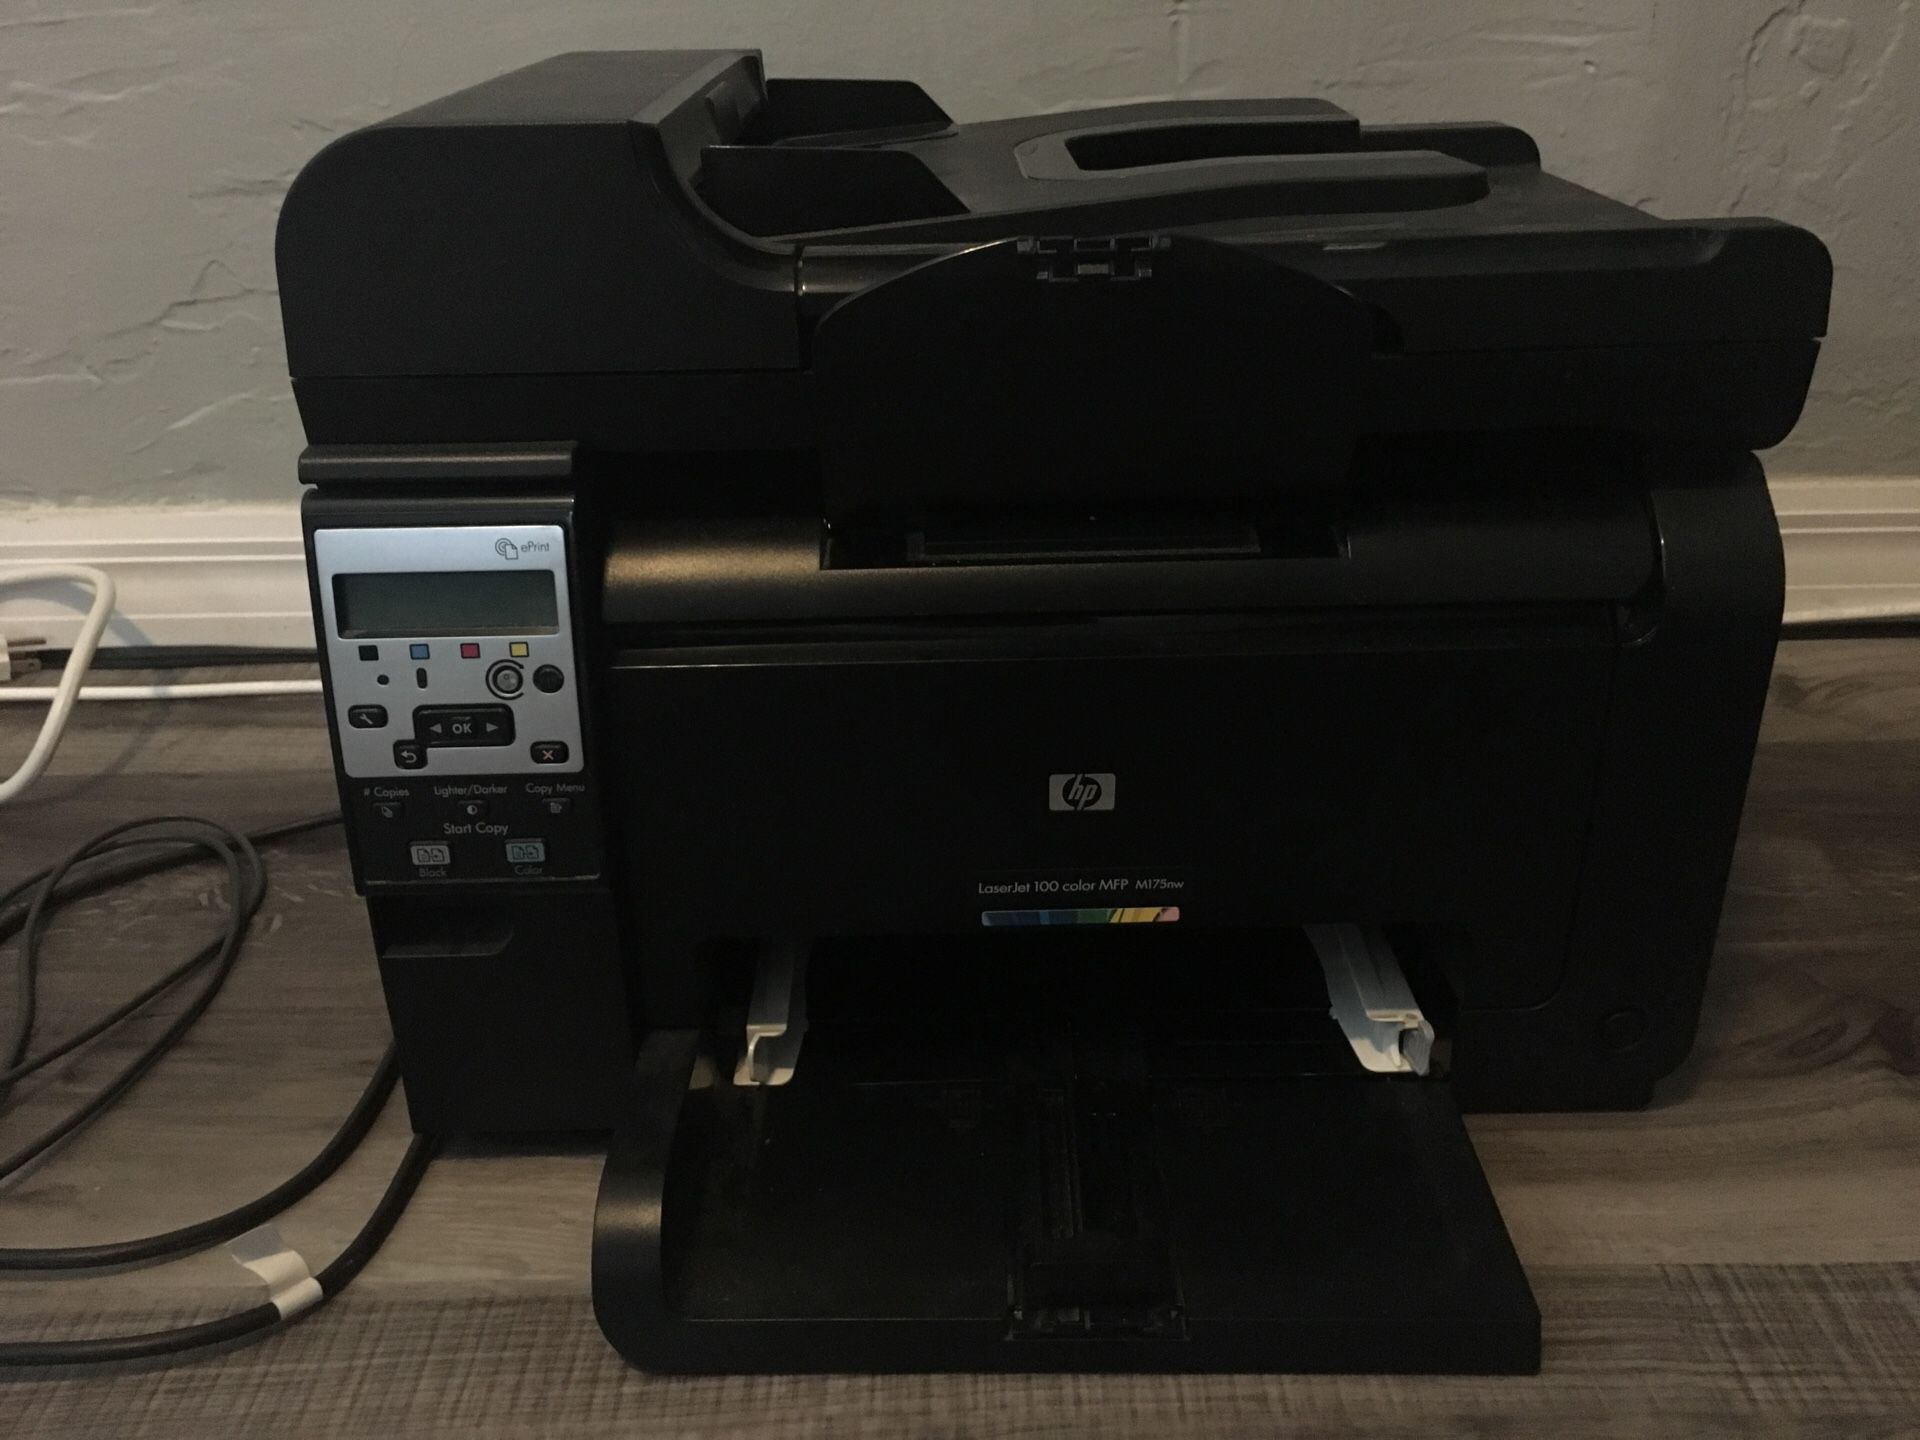 HP LaserJet 100 -M175nw printer/scanner